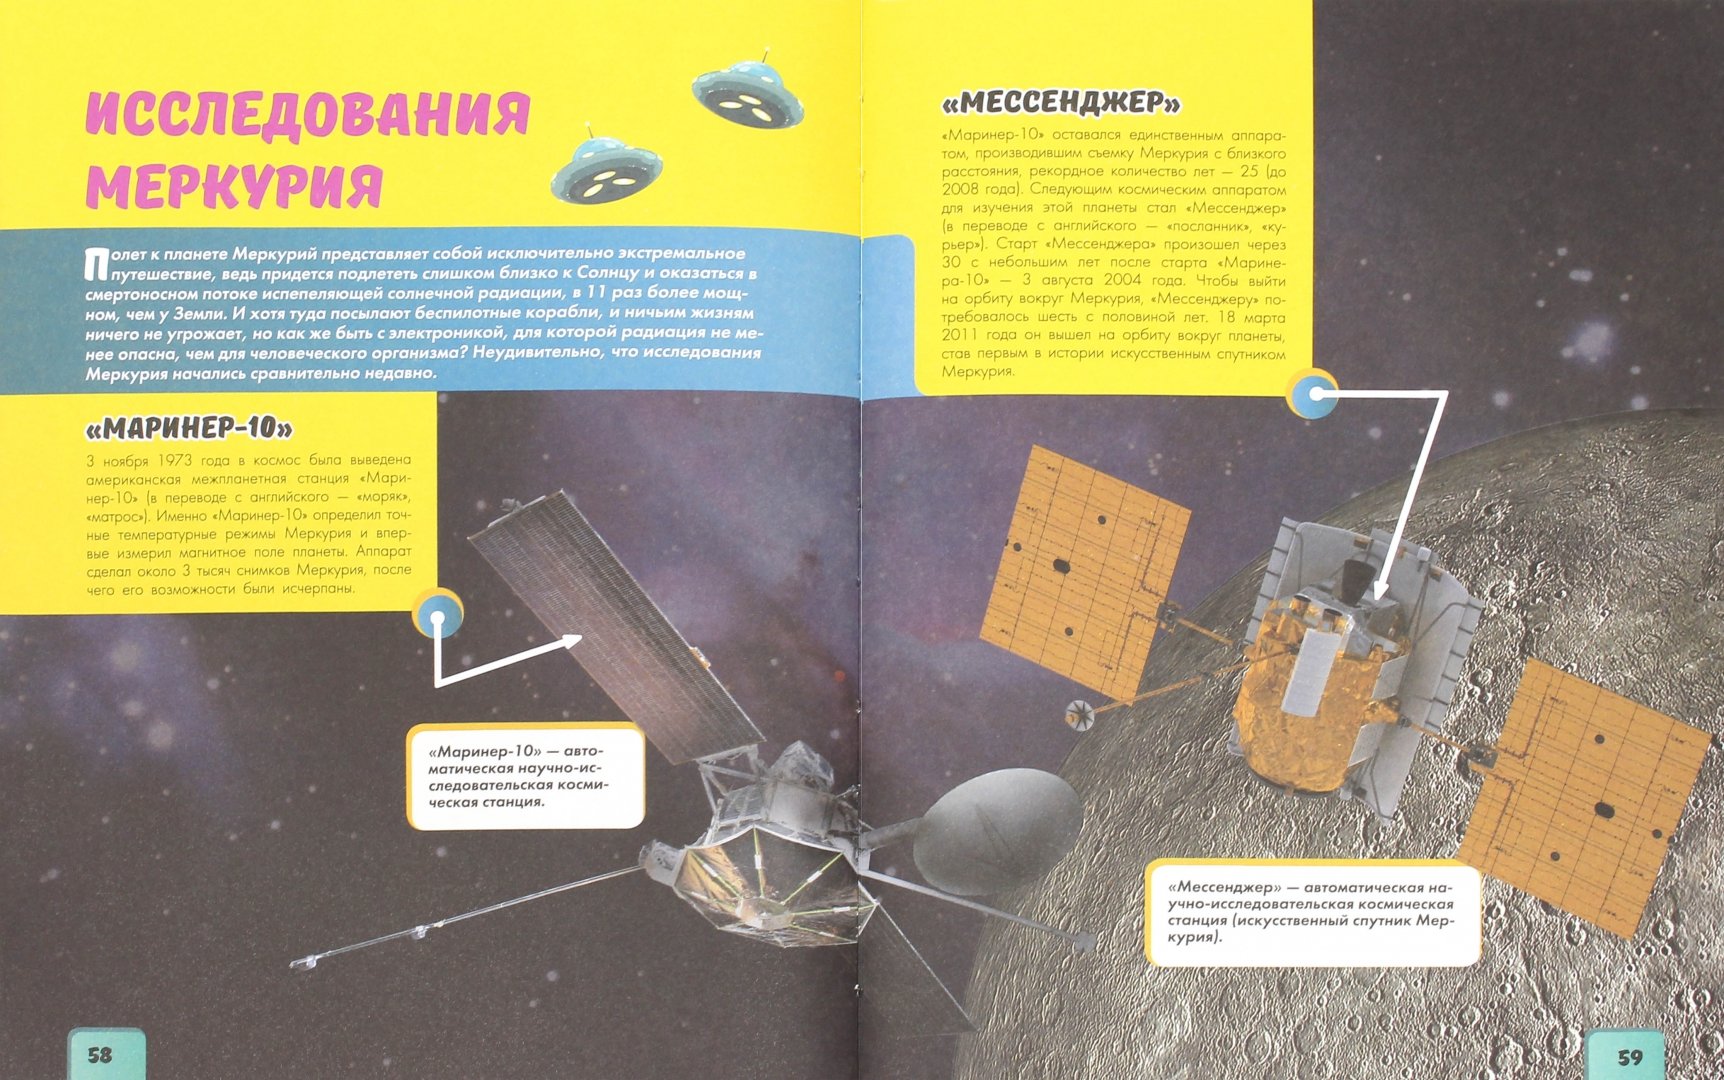 Иллюстрация 1 из 11 для Космос - Ликсо, Кошевар | Лабиринт - книги. Источник: Лабиринт